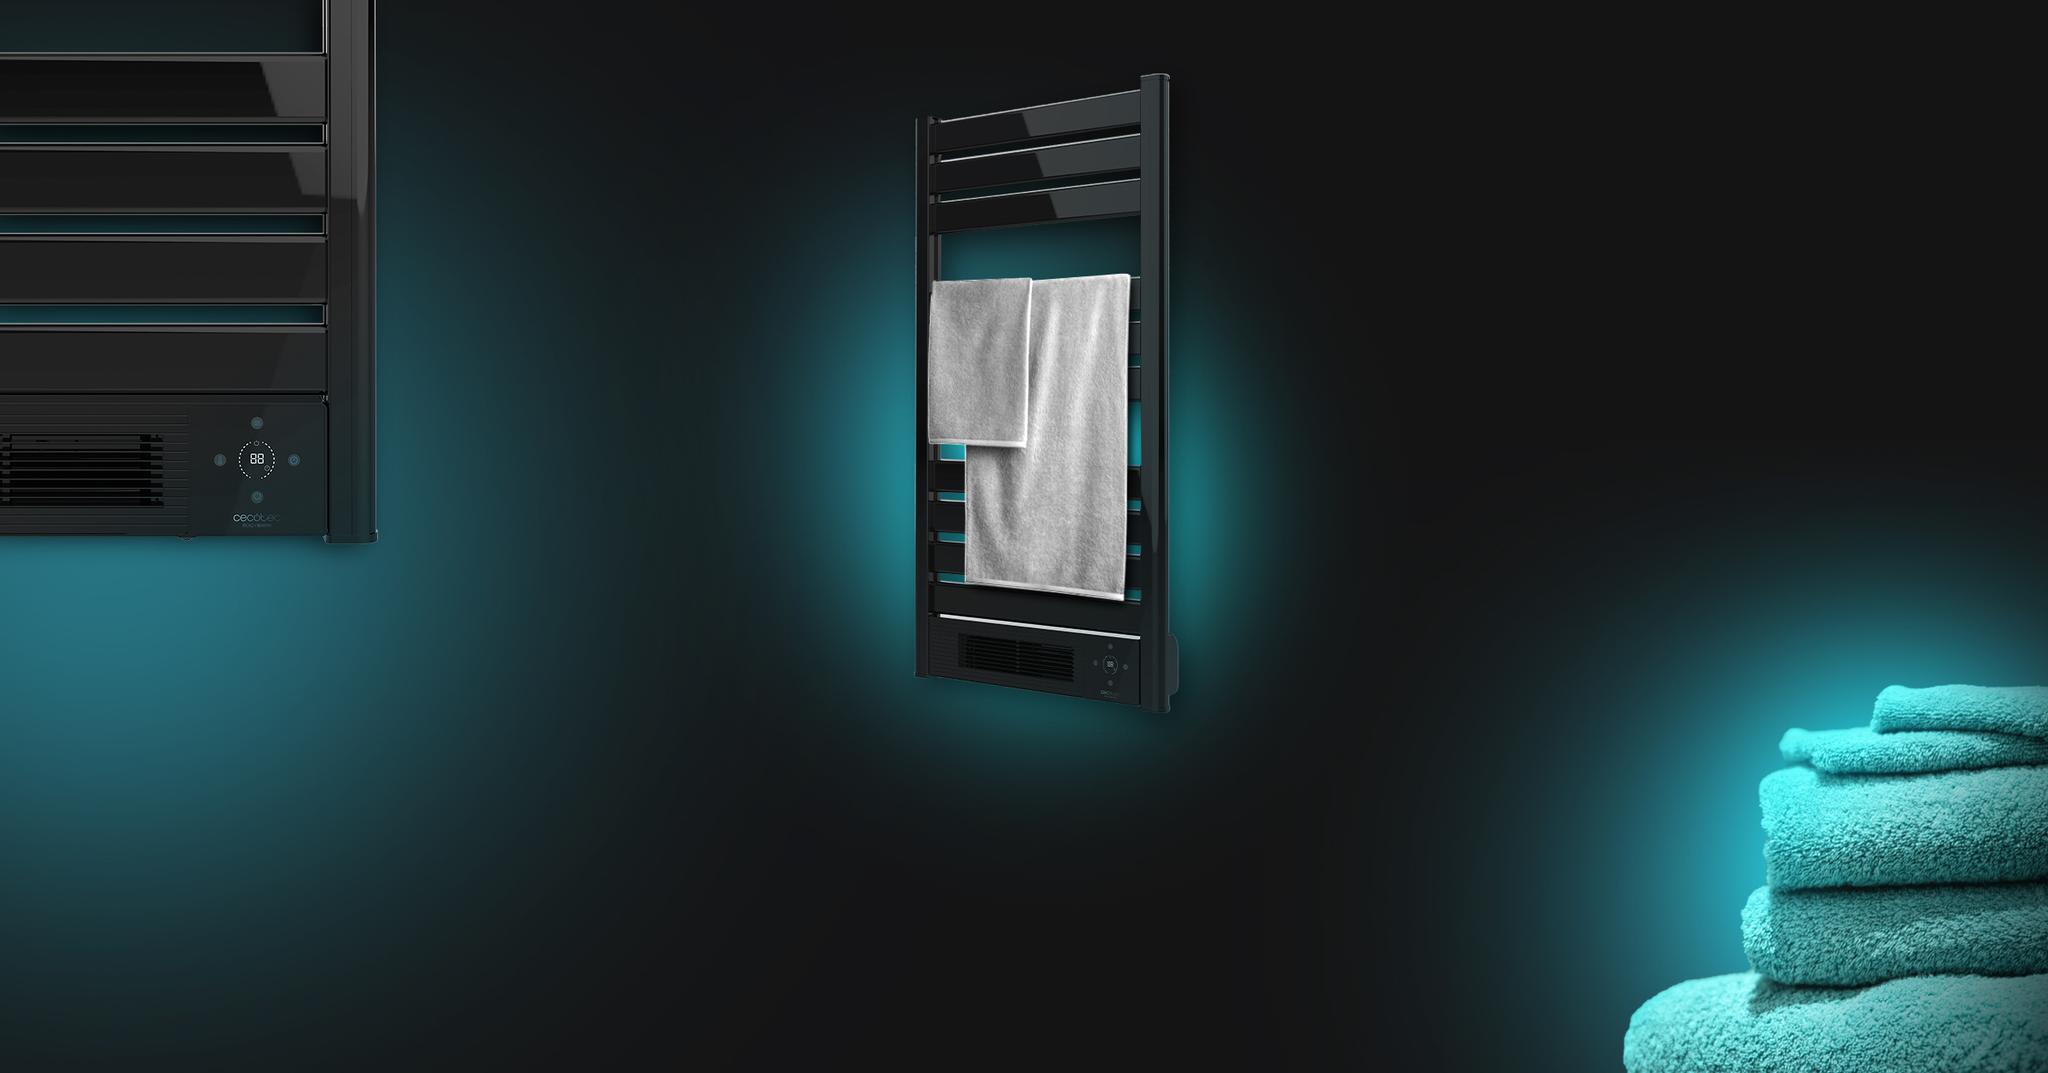 Immagine in primo piano del prodotto Ready Warm 9790 Ceramic Towel